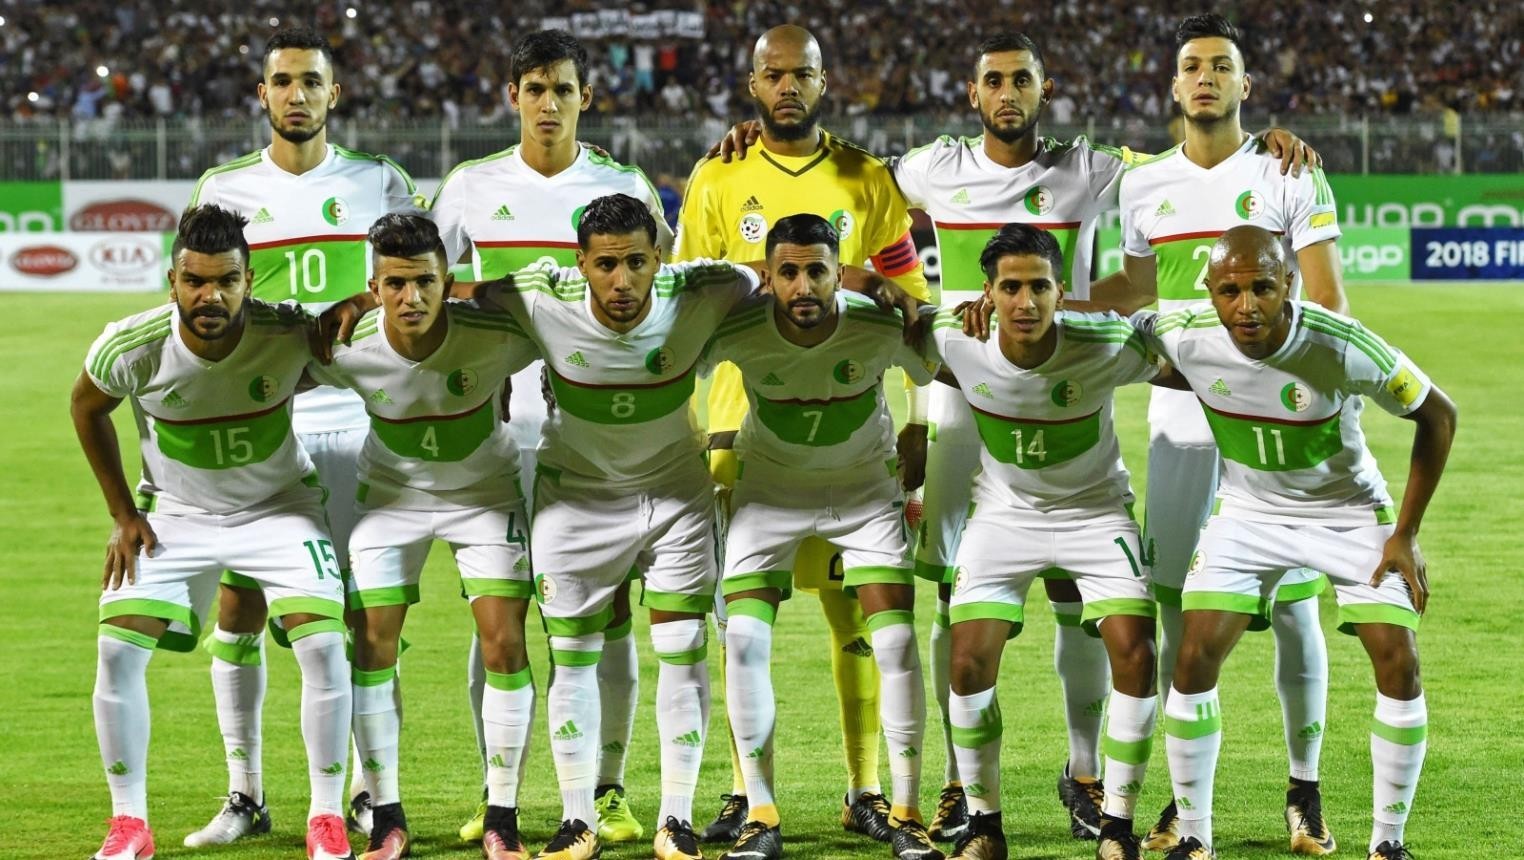   قائمة منتخب الجزائر لأمم أفريقيا 2019